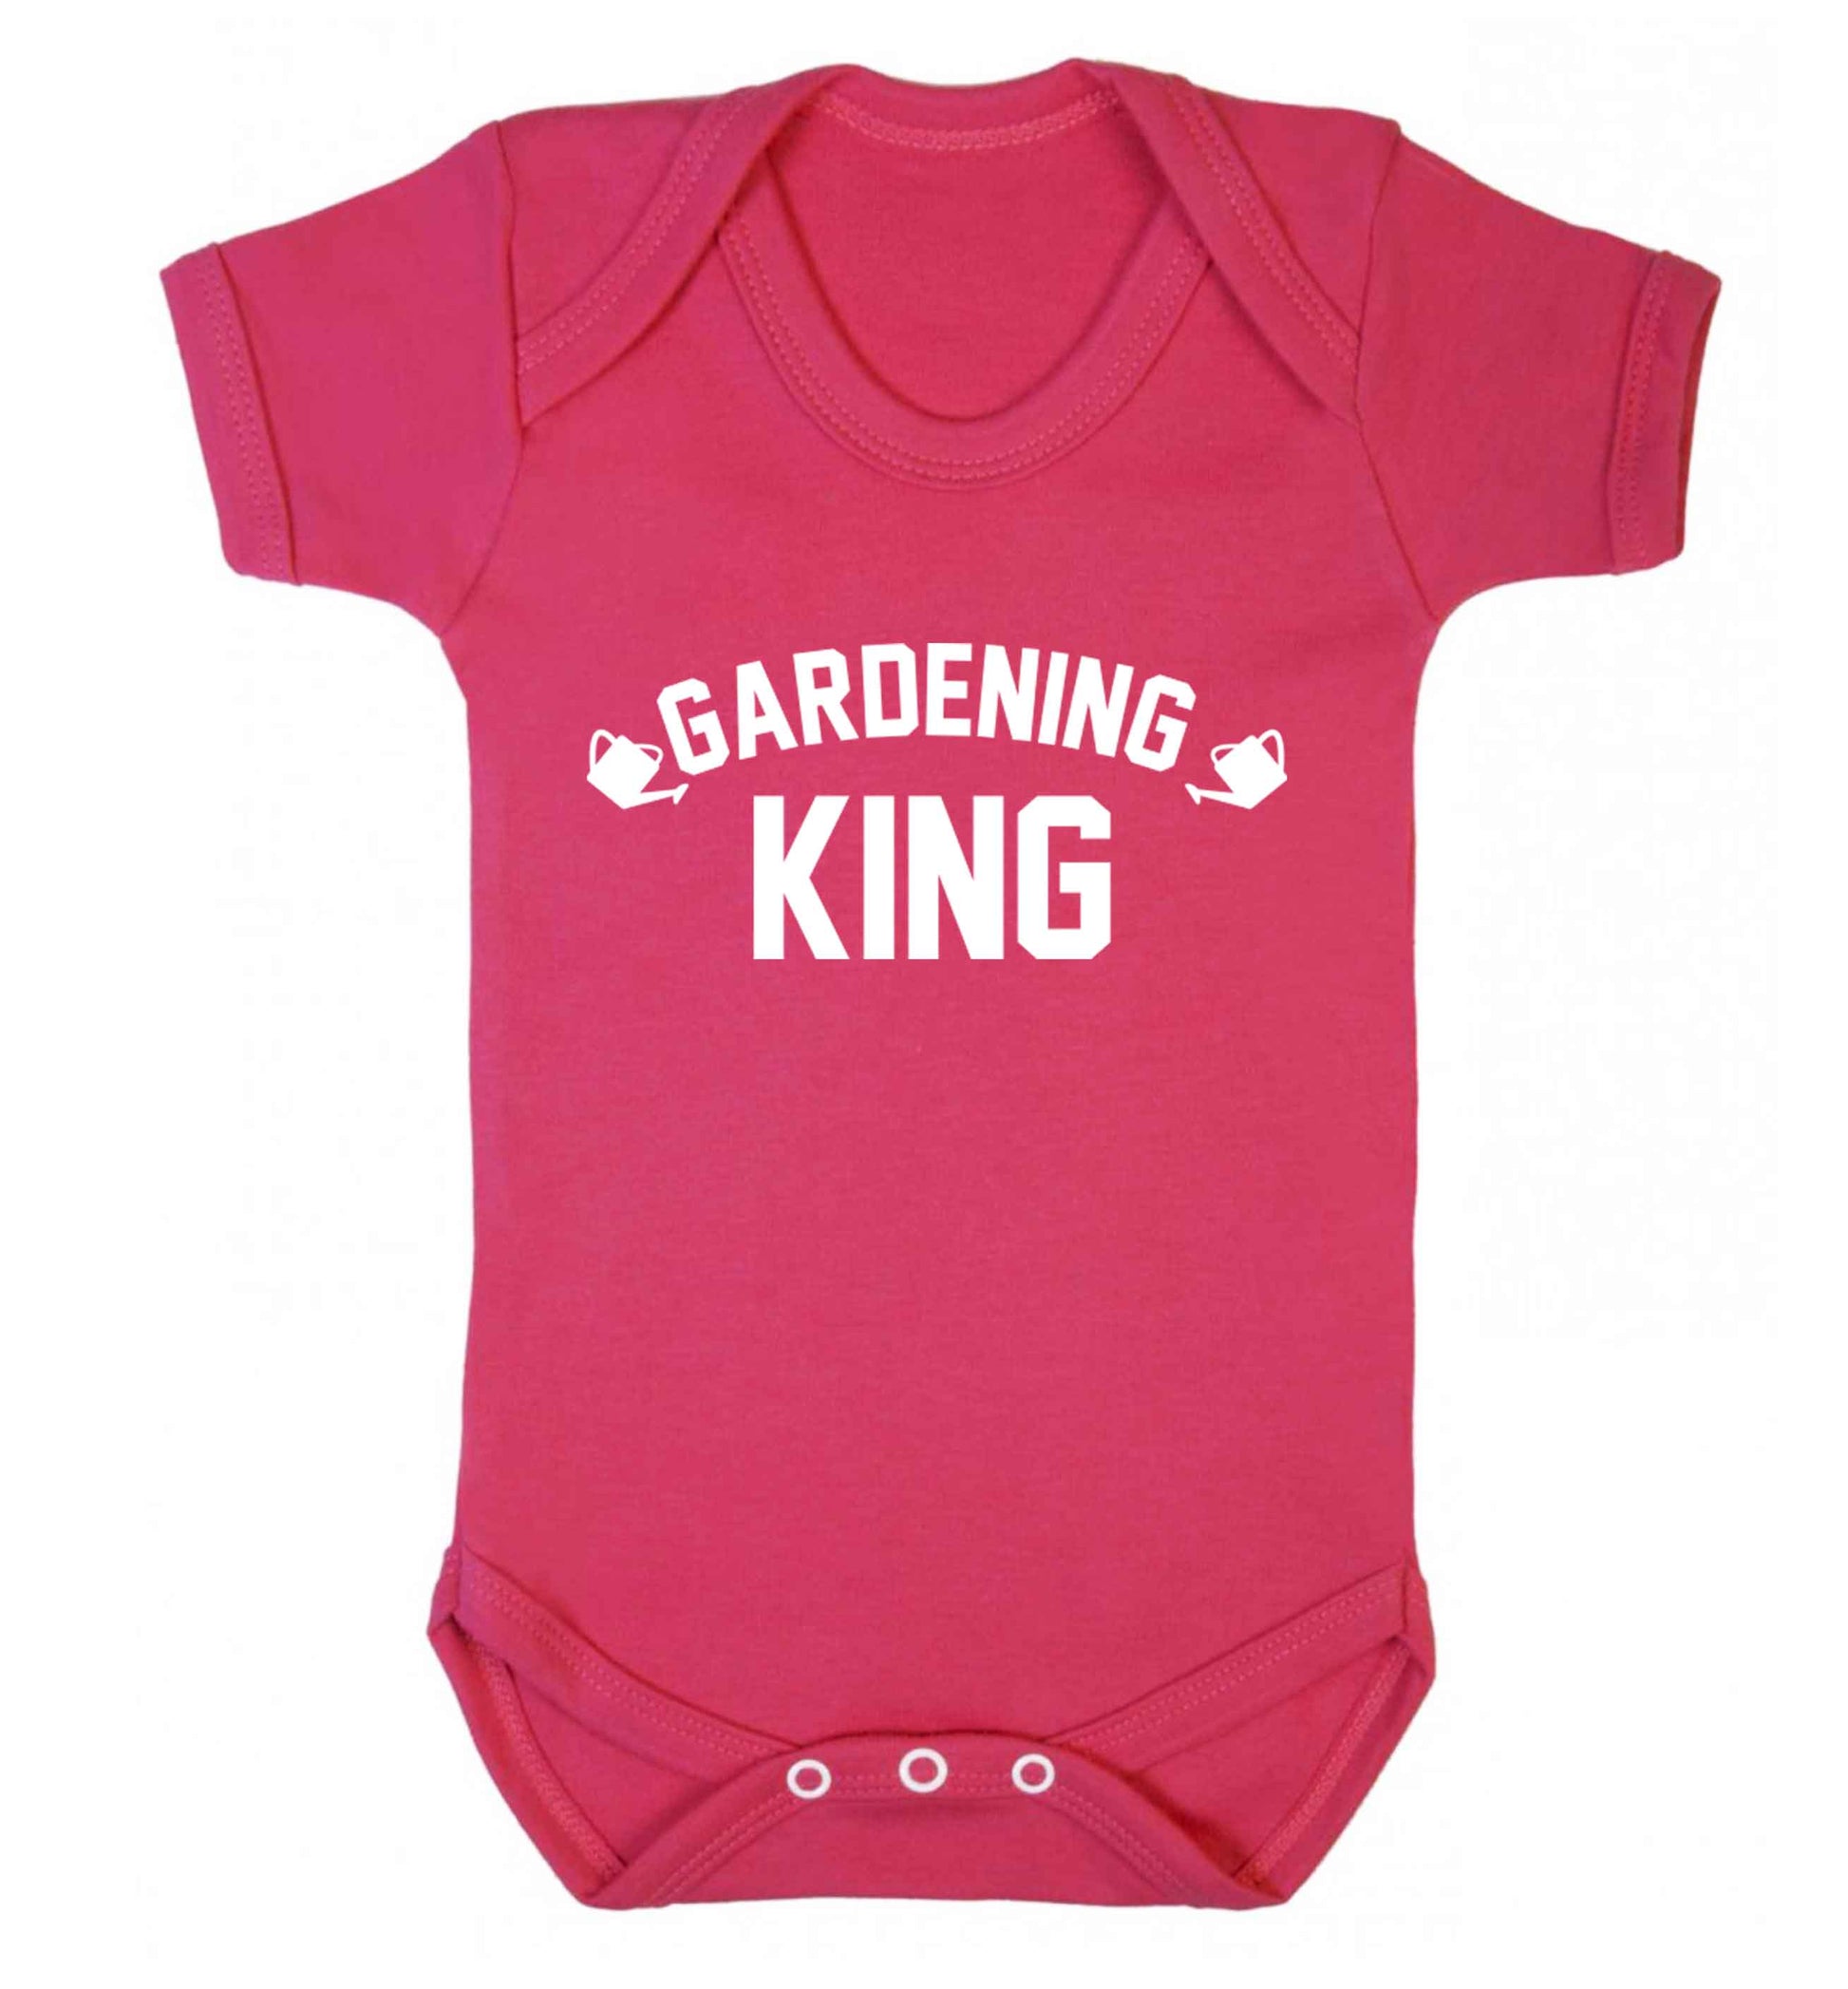 Gardening king Baby Vest dark pink 18-24 months